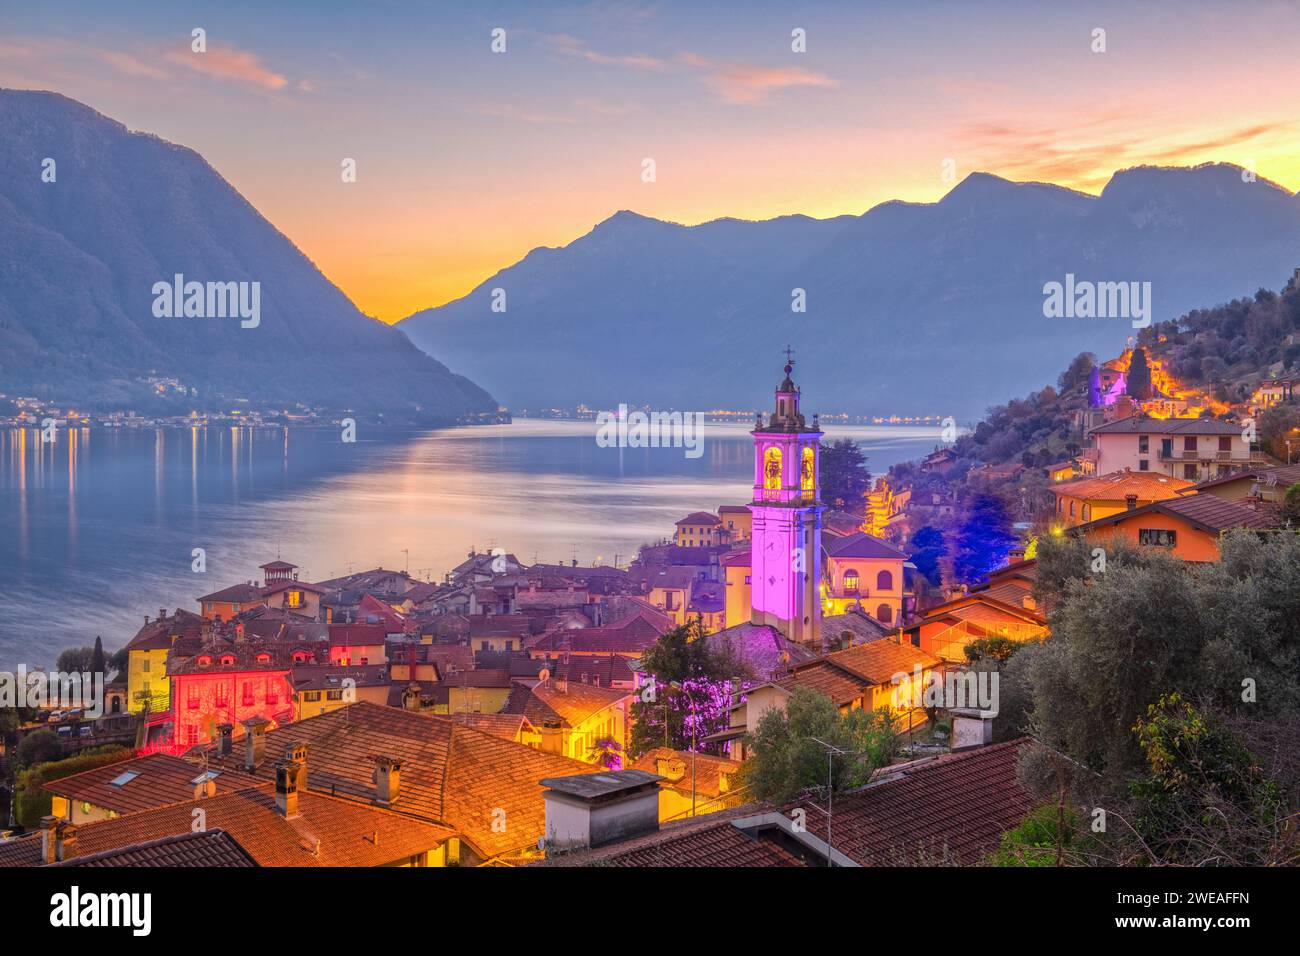 Sala Comacina, Como, Italy town view on Lake Como at dusk. Stock Photo